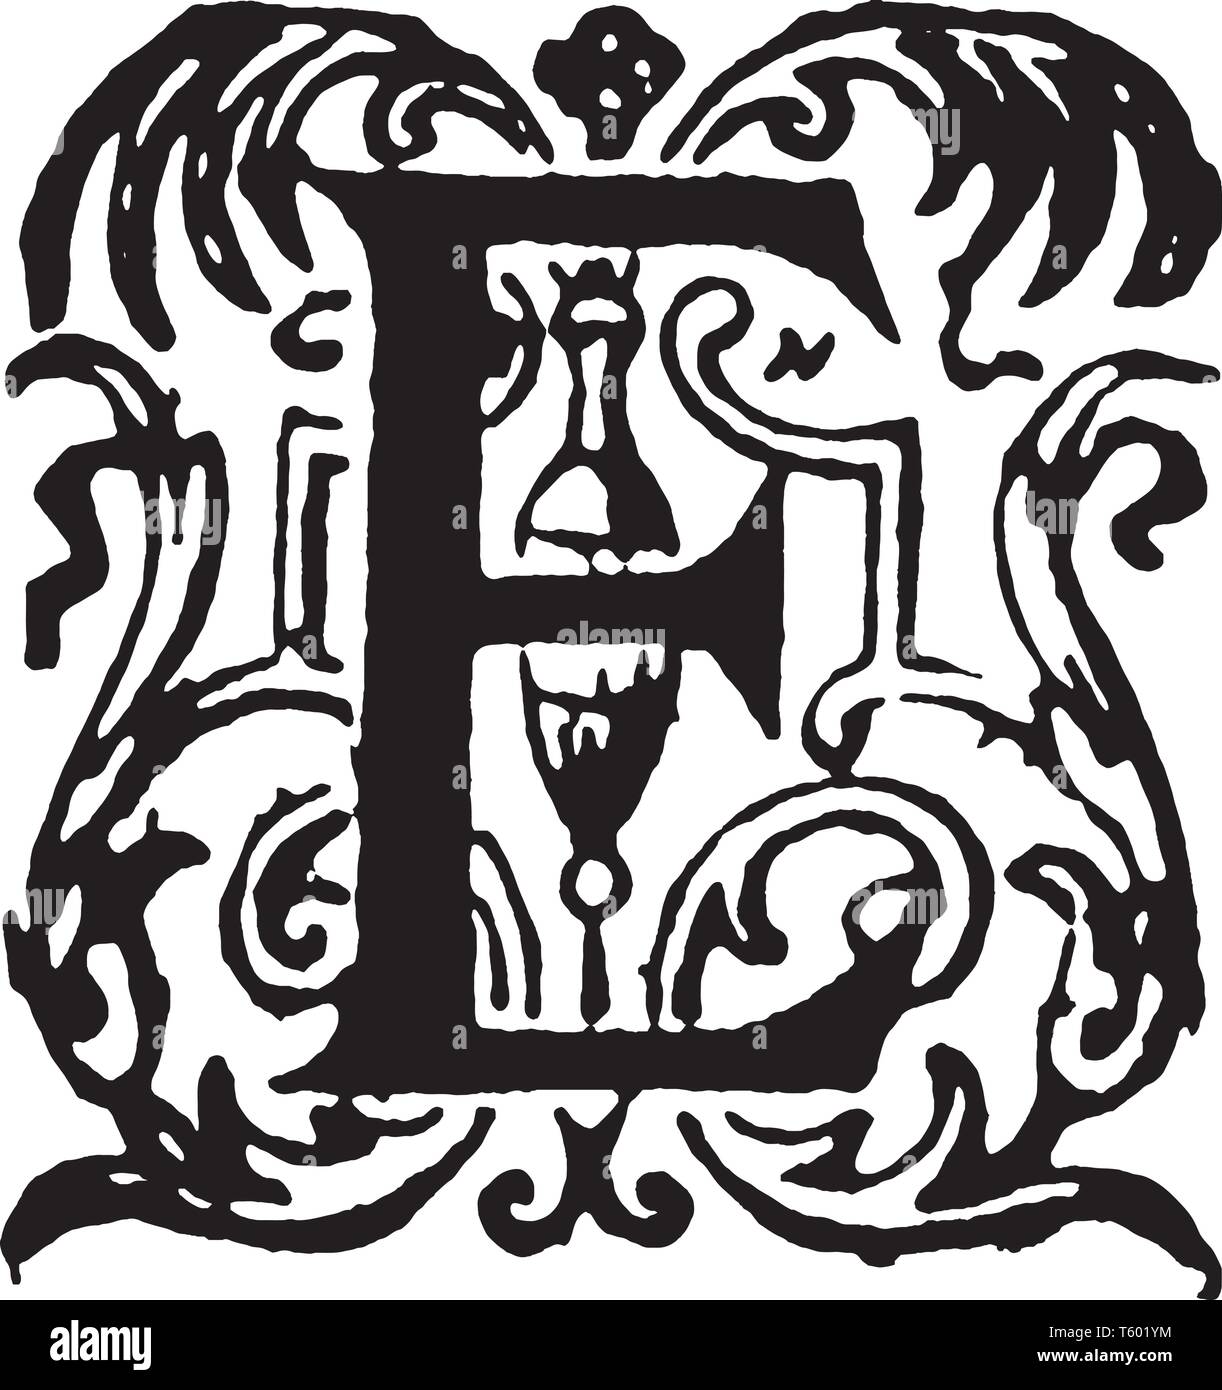 Логотип буква е. Буква e. Эмблема с буквой е. Герб с буквой е. Буква е в разных стилях.